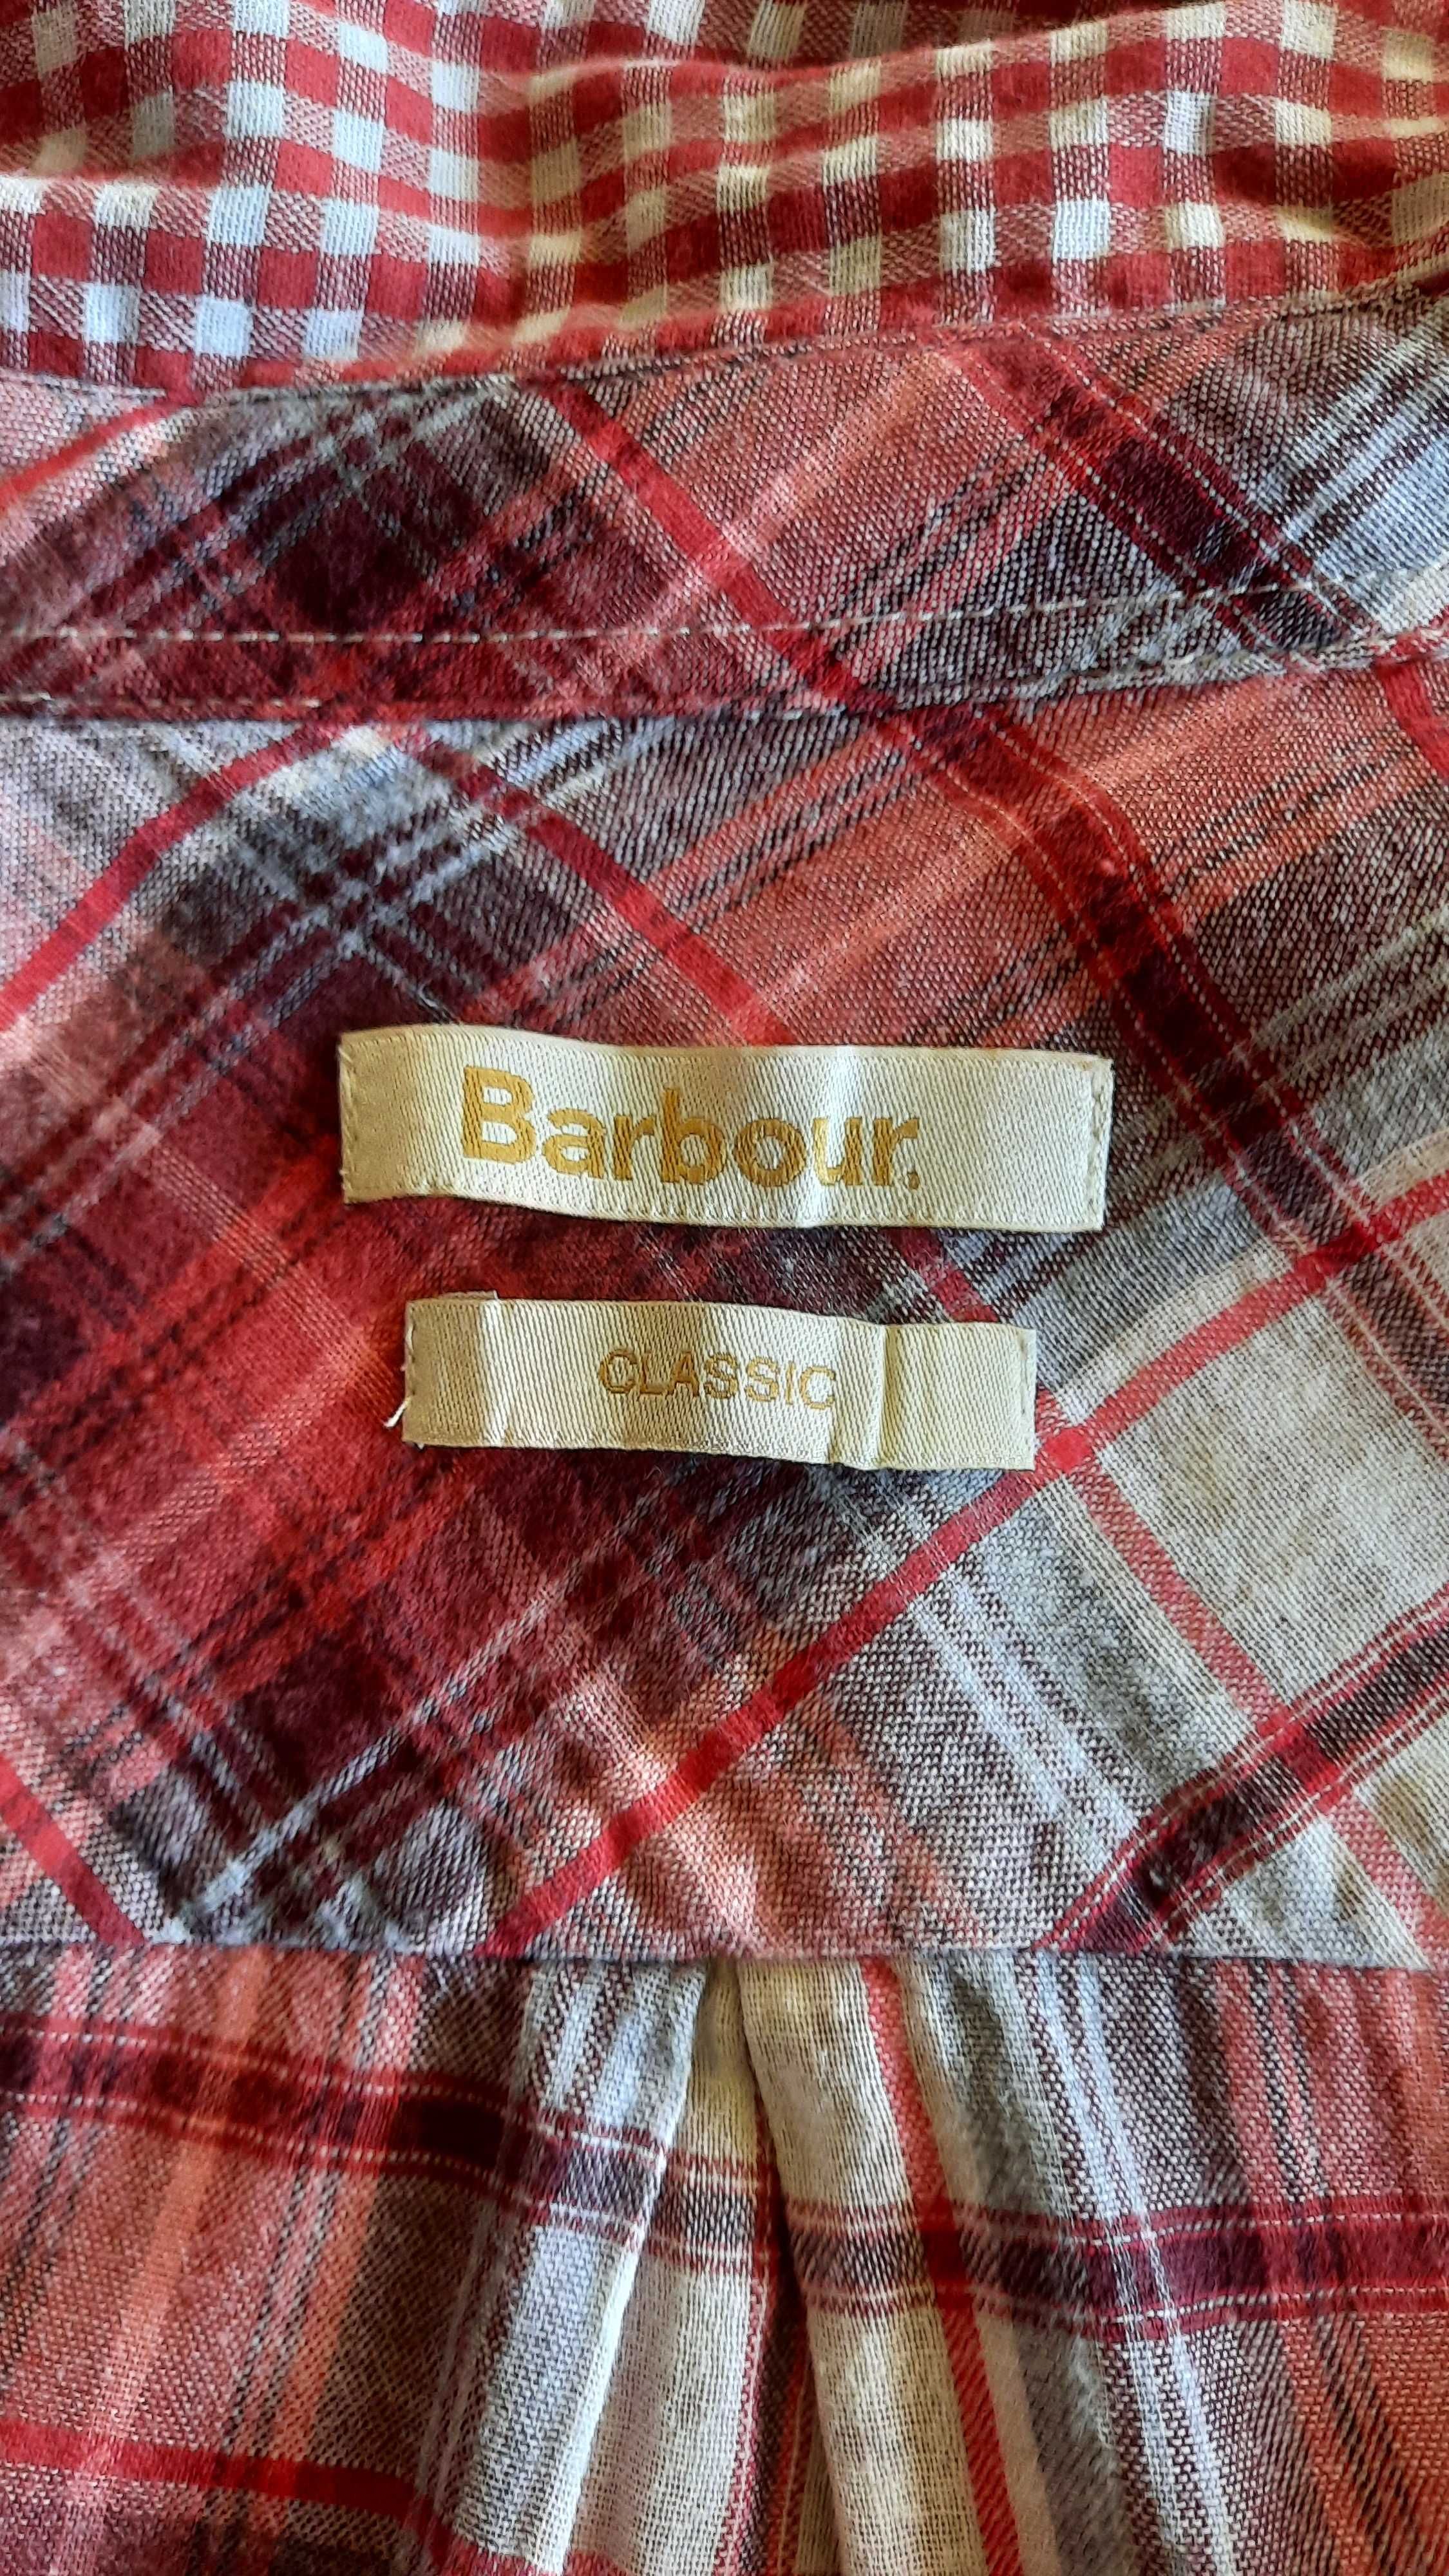 Damska koszula marki Barbour - 42/44